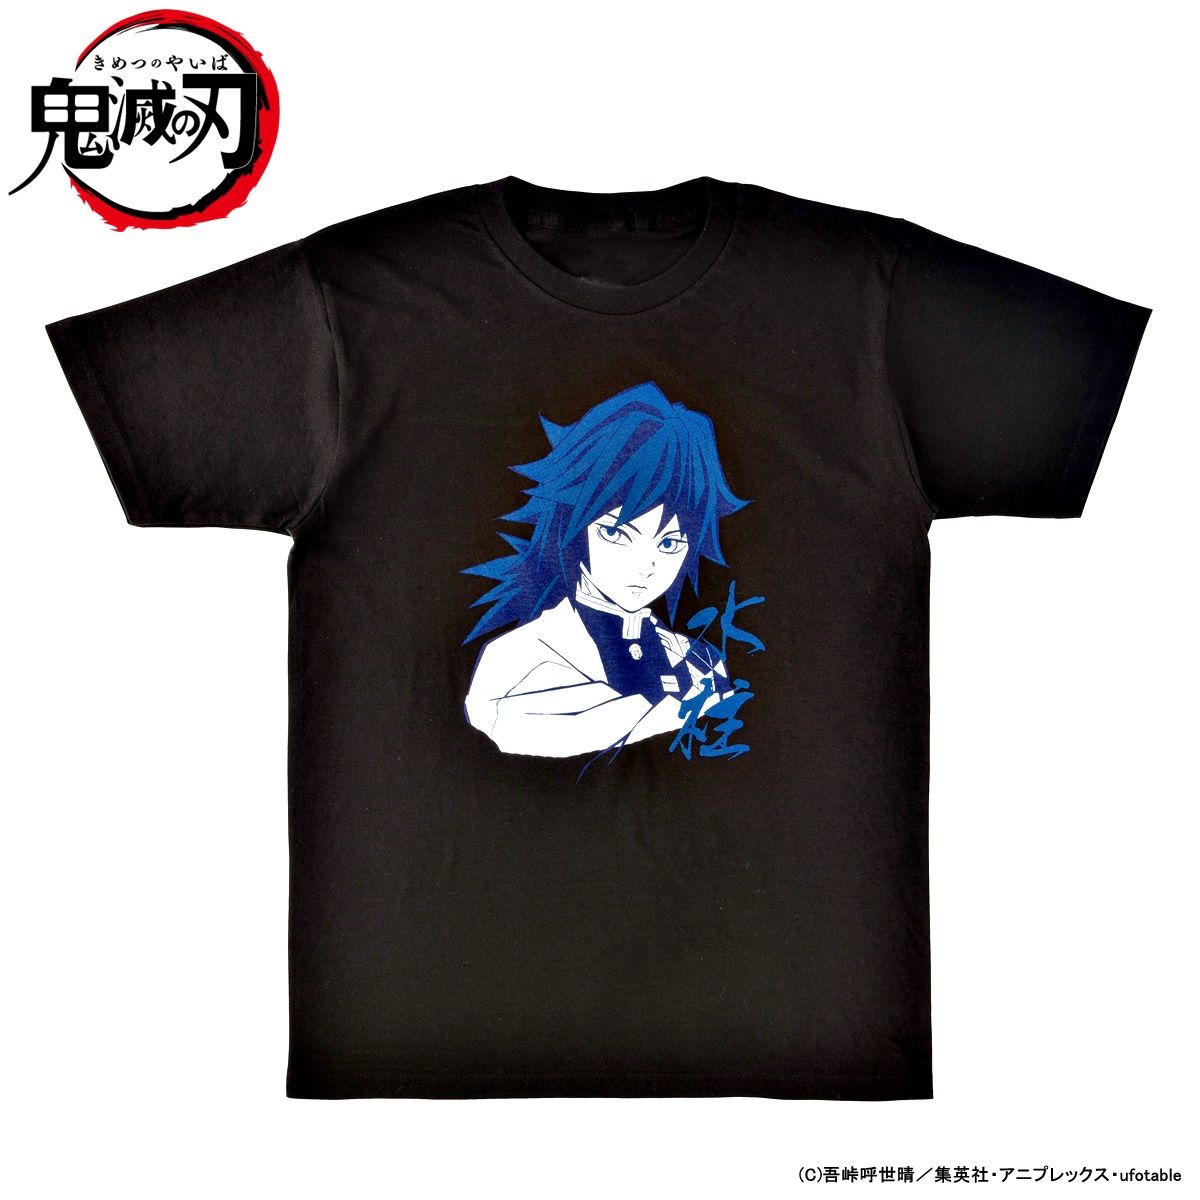 Demon Slayer: Kimetsu no Yaiba The Pillars T-shirt